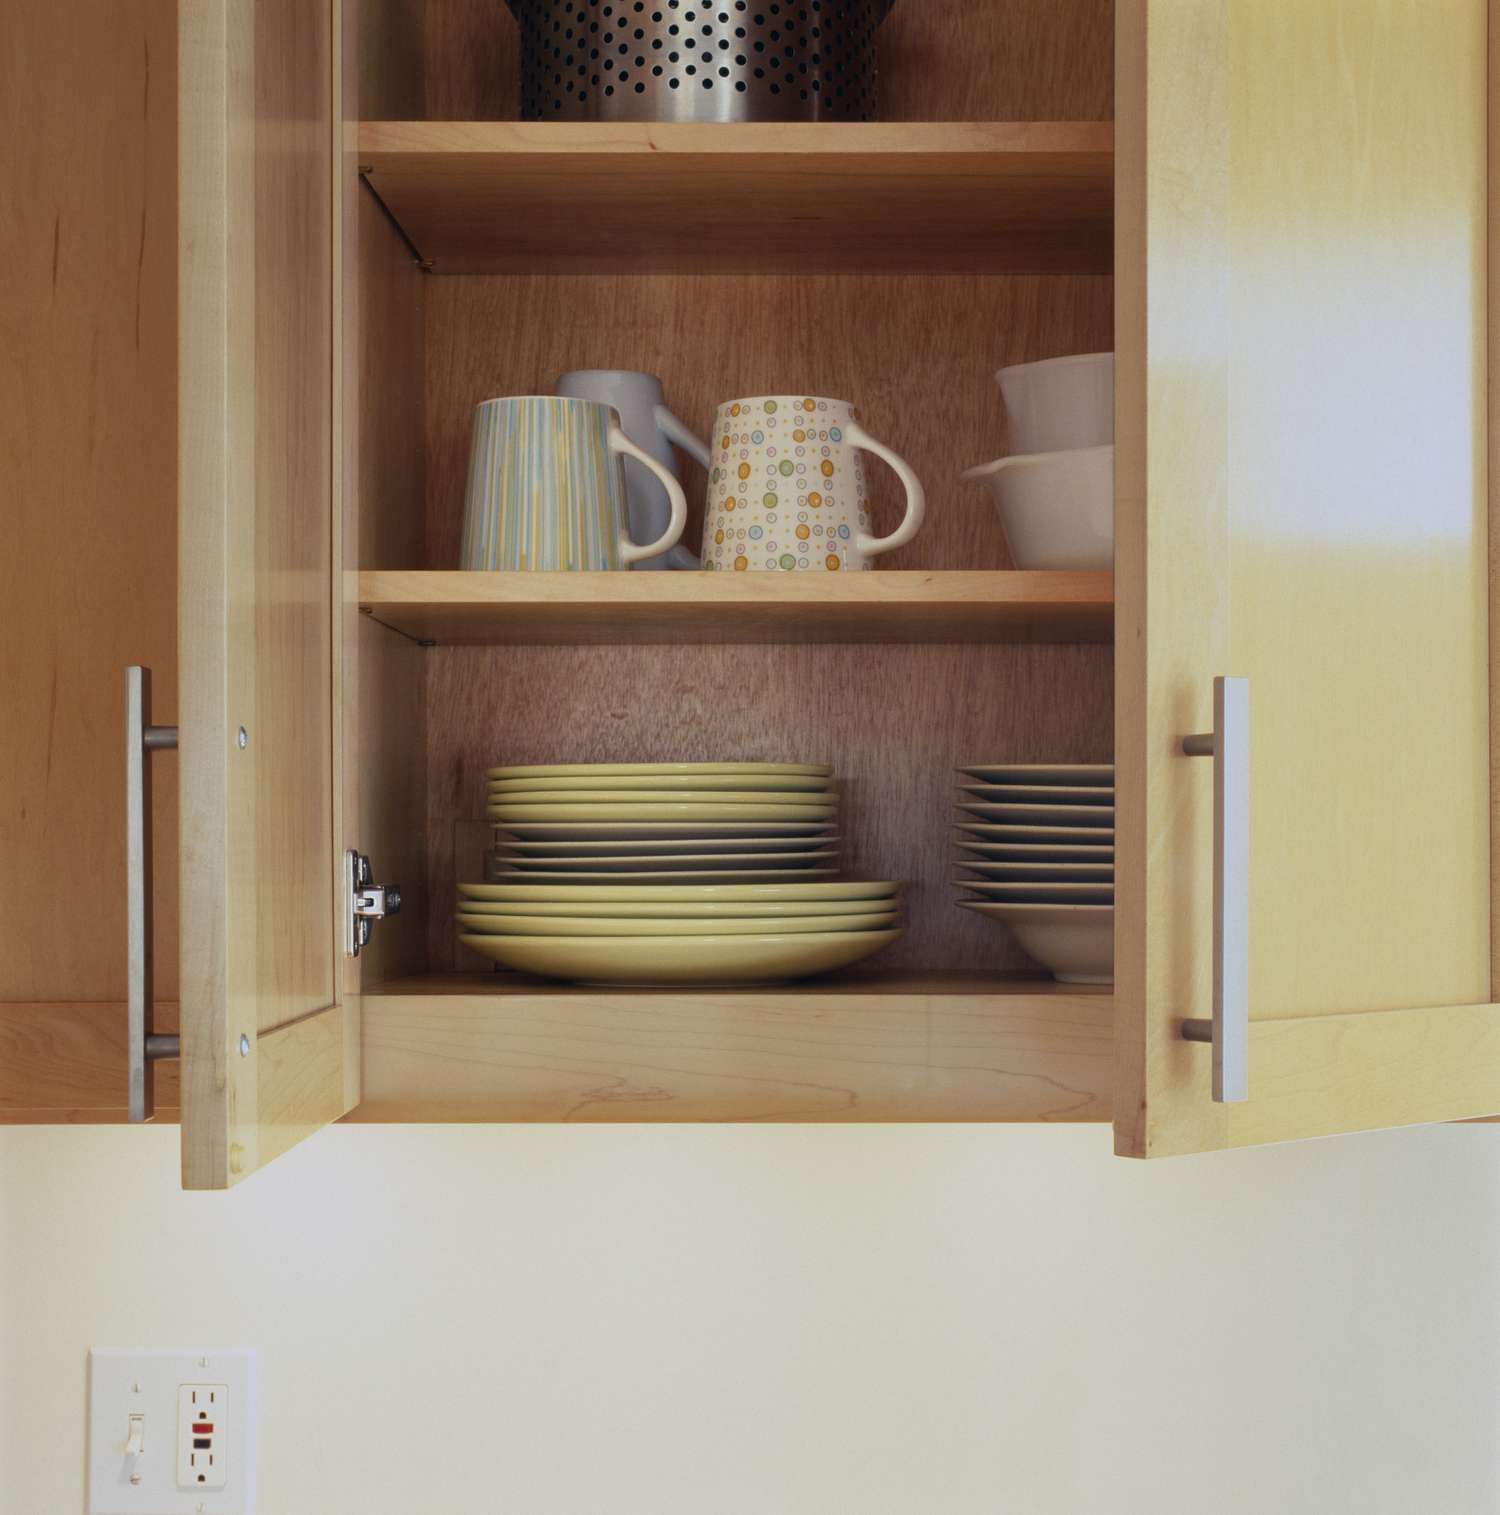 Primer plano de platos en un armario de cocina abierto.